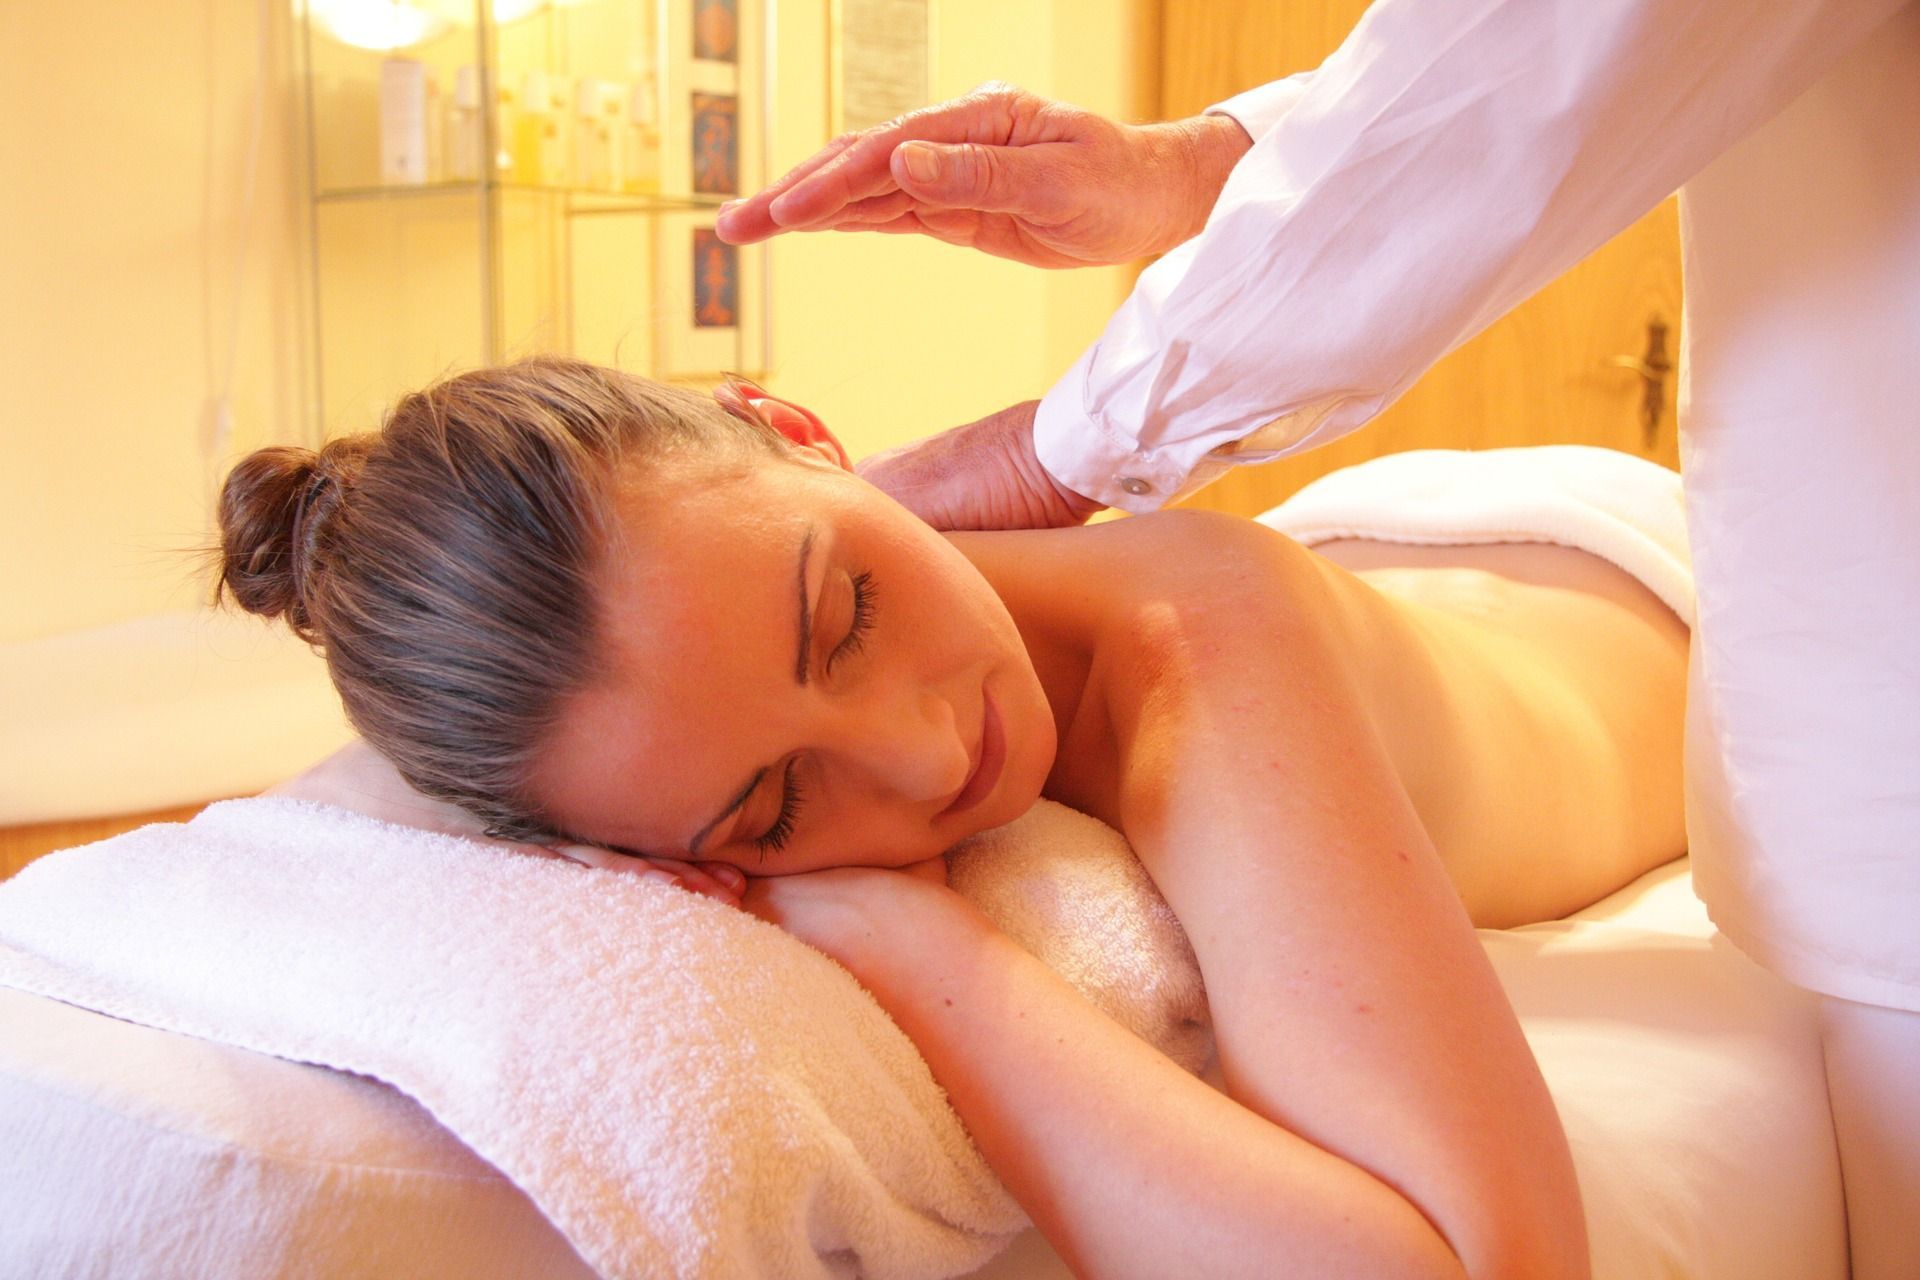 Os 8 benefícios da massagem tailandesa para o corpo e a mente